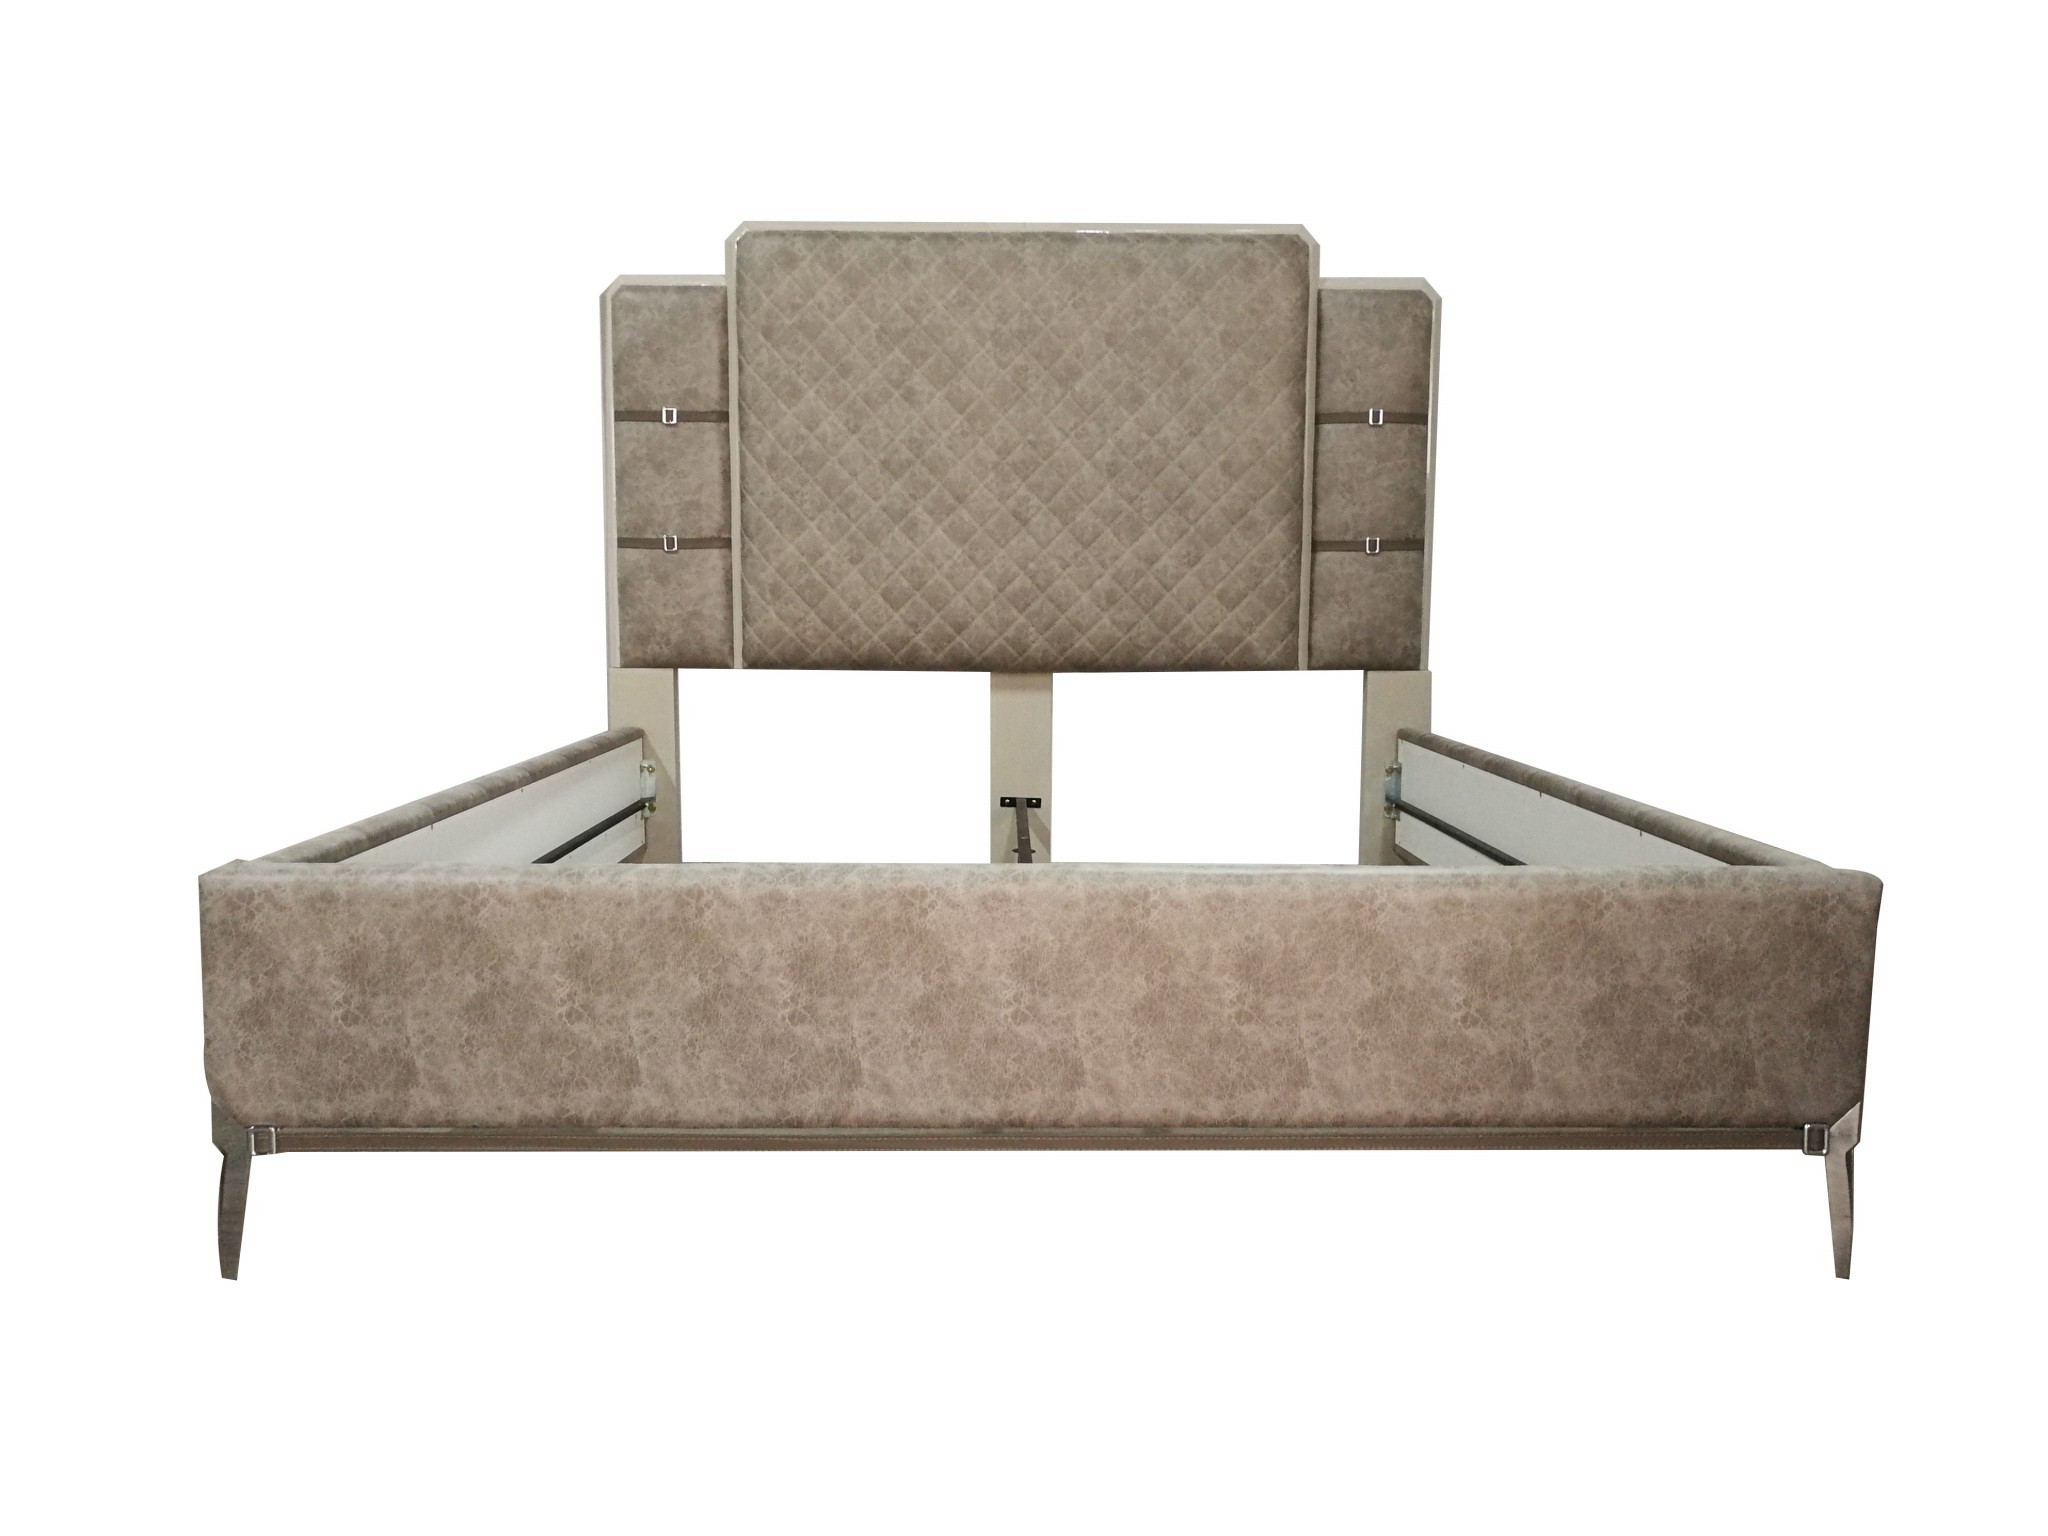 83" X 86" X 65" Vintage Beige PU Wood Upholstered (Bed) Metal Leg Veneer (Melamine) Eastern King Bed